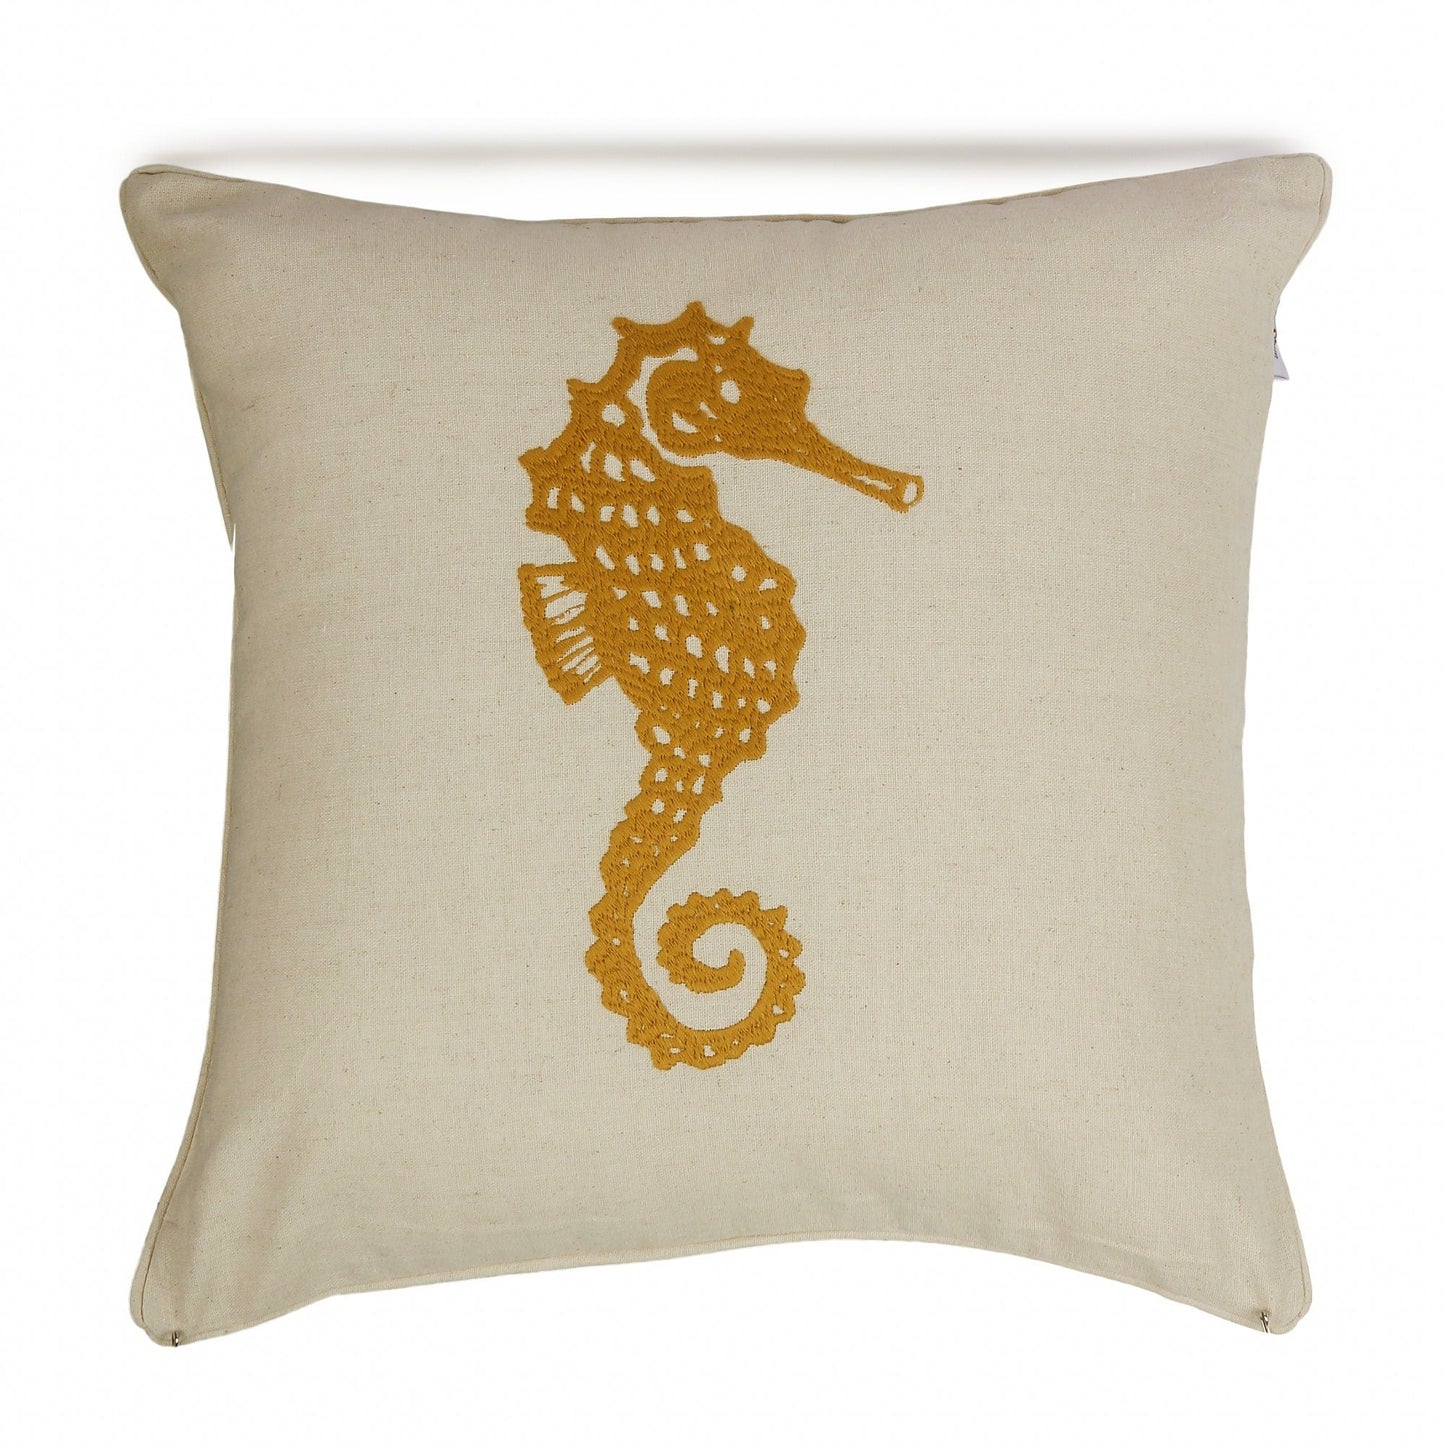 Nautical Sea Horse Cushion Cover 18x18 inches